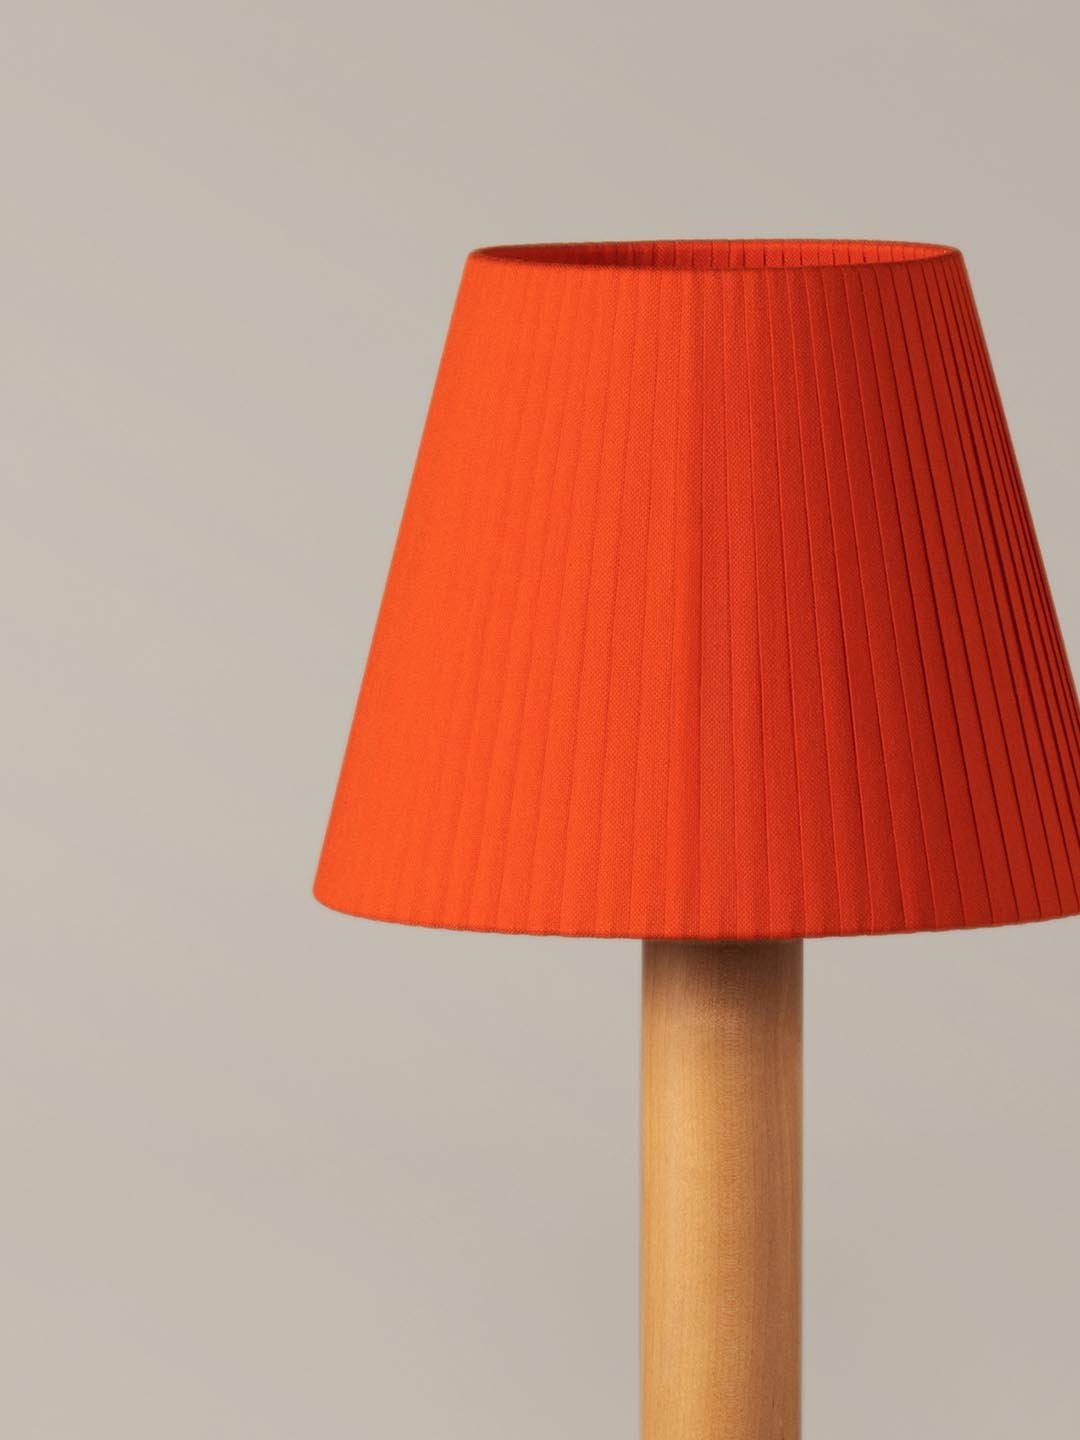 Дизайнерский настольная лампа Santa Cole Basica M1 в светлом интерьере